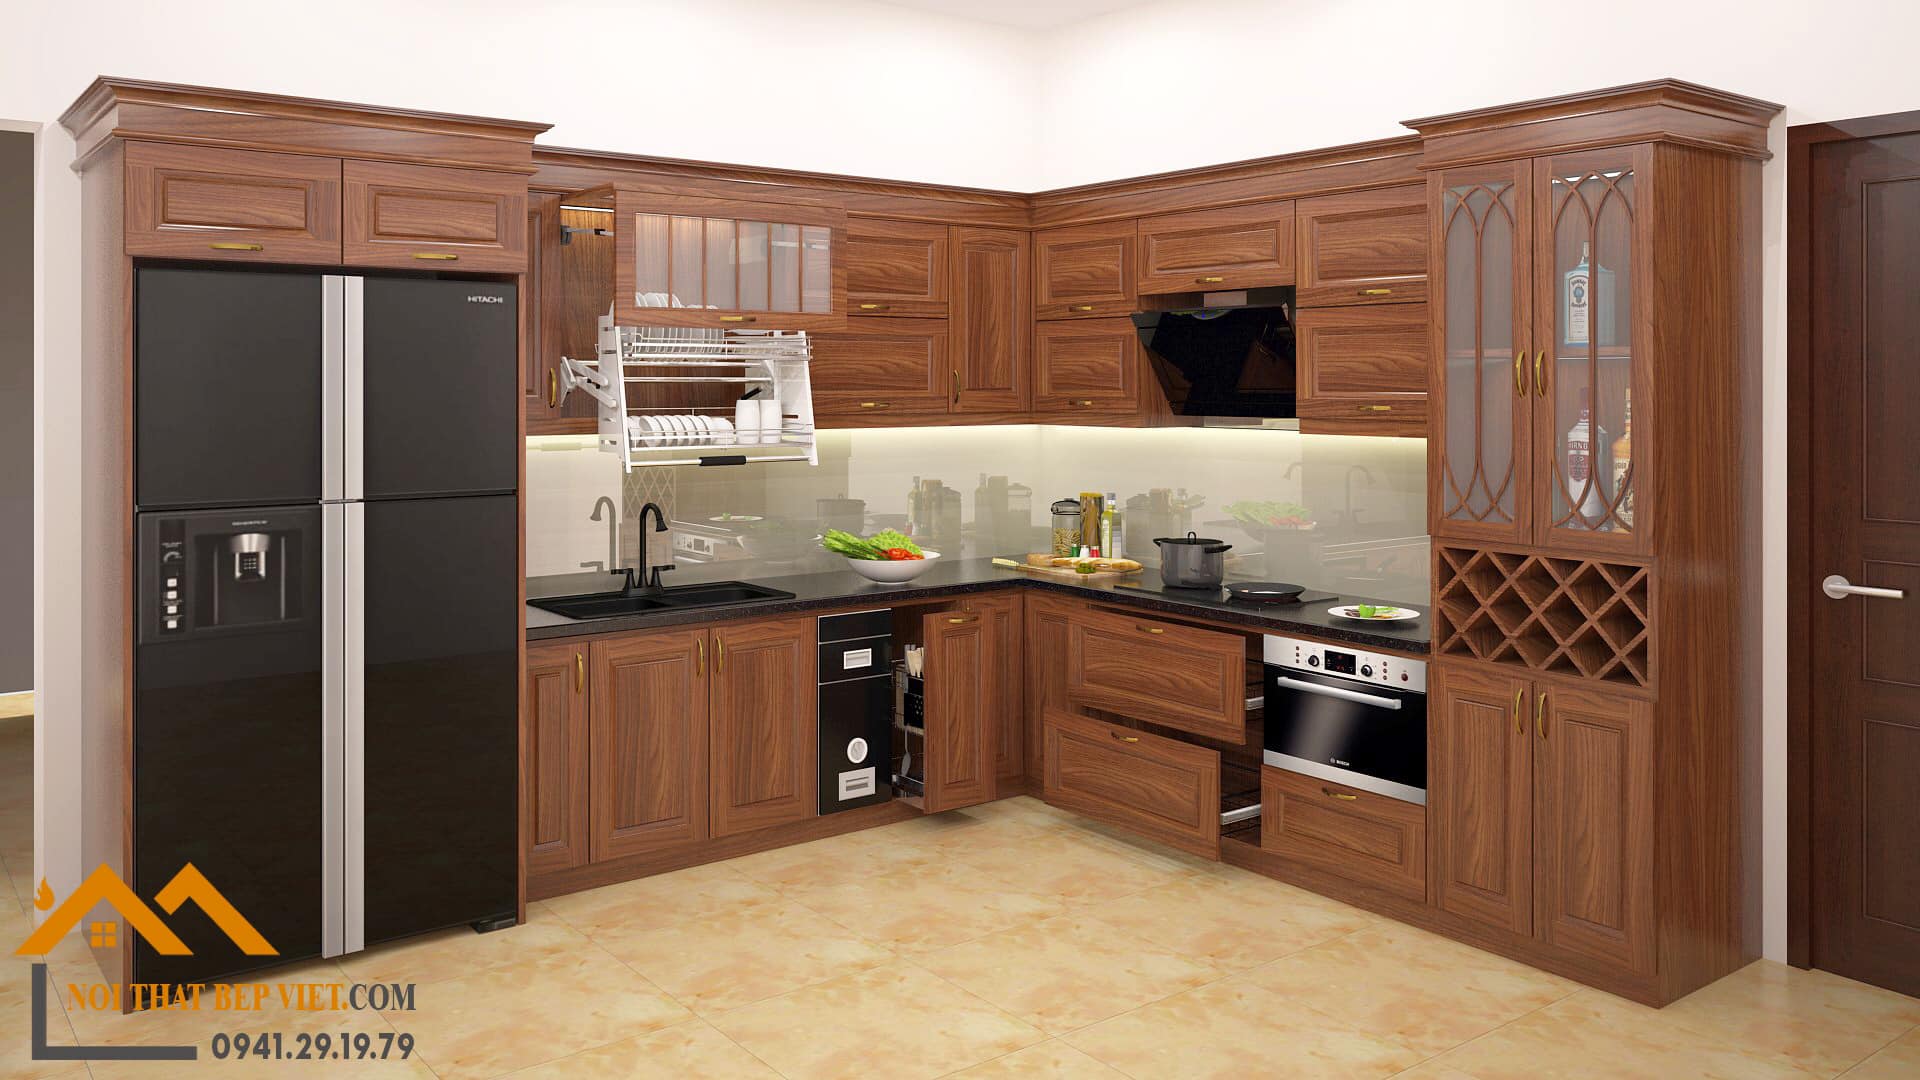 Với chất liệu gỗ Lim đẹp và bền, tủ bếp gỗ Lim làm cho căn bếp nhà bạn trở nên sang trọng và đẳng cấp hơn. Thiết kế được tinh tế đến từng chi tiết, làm cho tủ bếp này trở thành lựa chọn hoàn hảo cho những người muốn tạo nên không gian bếp đẹp và tinh tế. Hãy nhanh chóng khám phá hình ảnh đẹp về tủ bếp gỗ Lim để chọn cho mình sản phẩm ưng ý nhất.